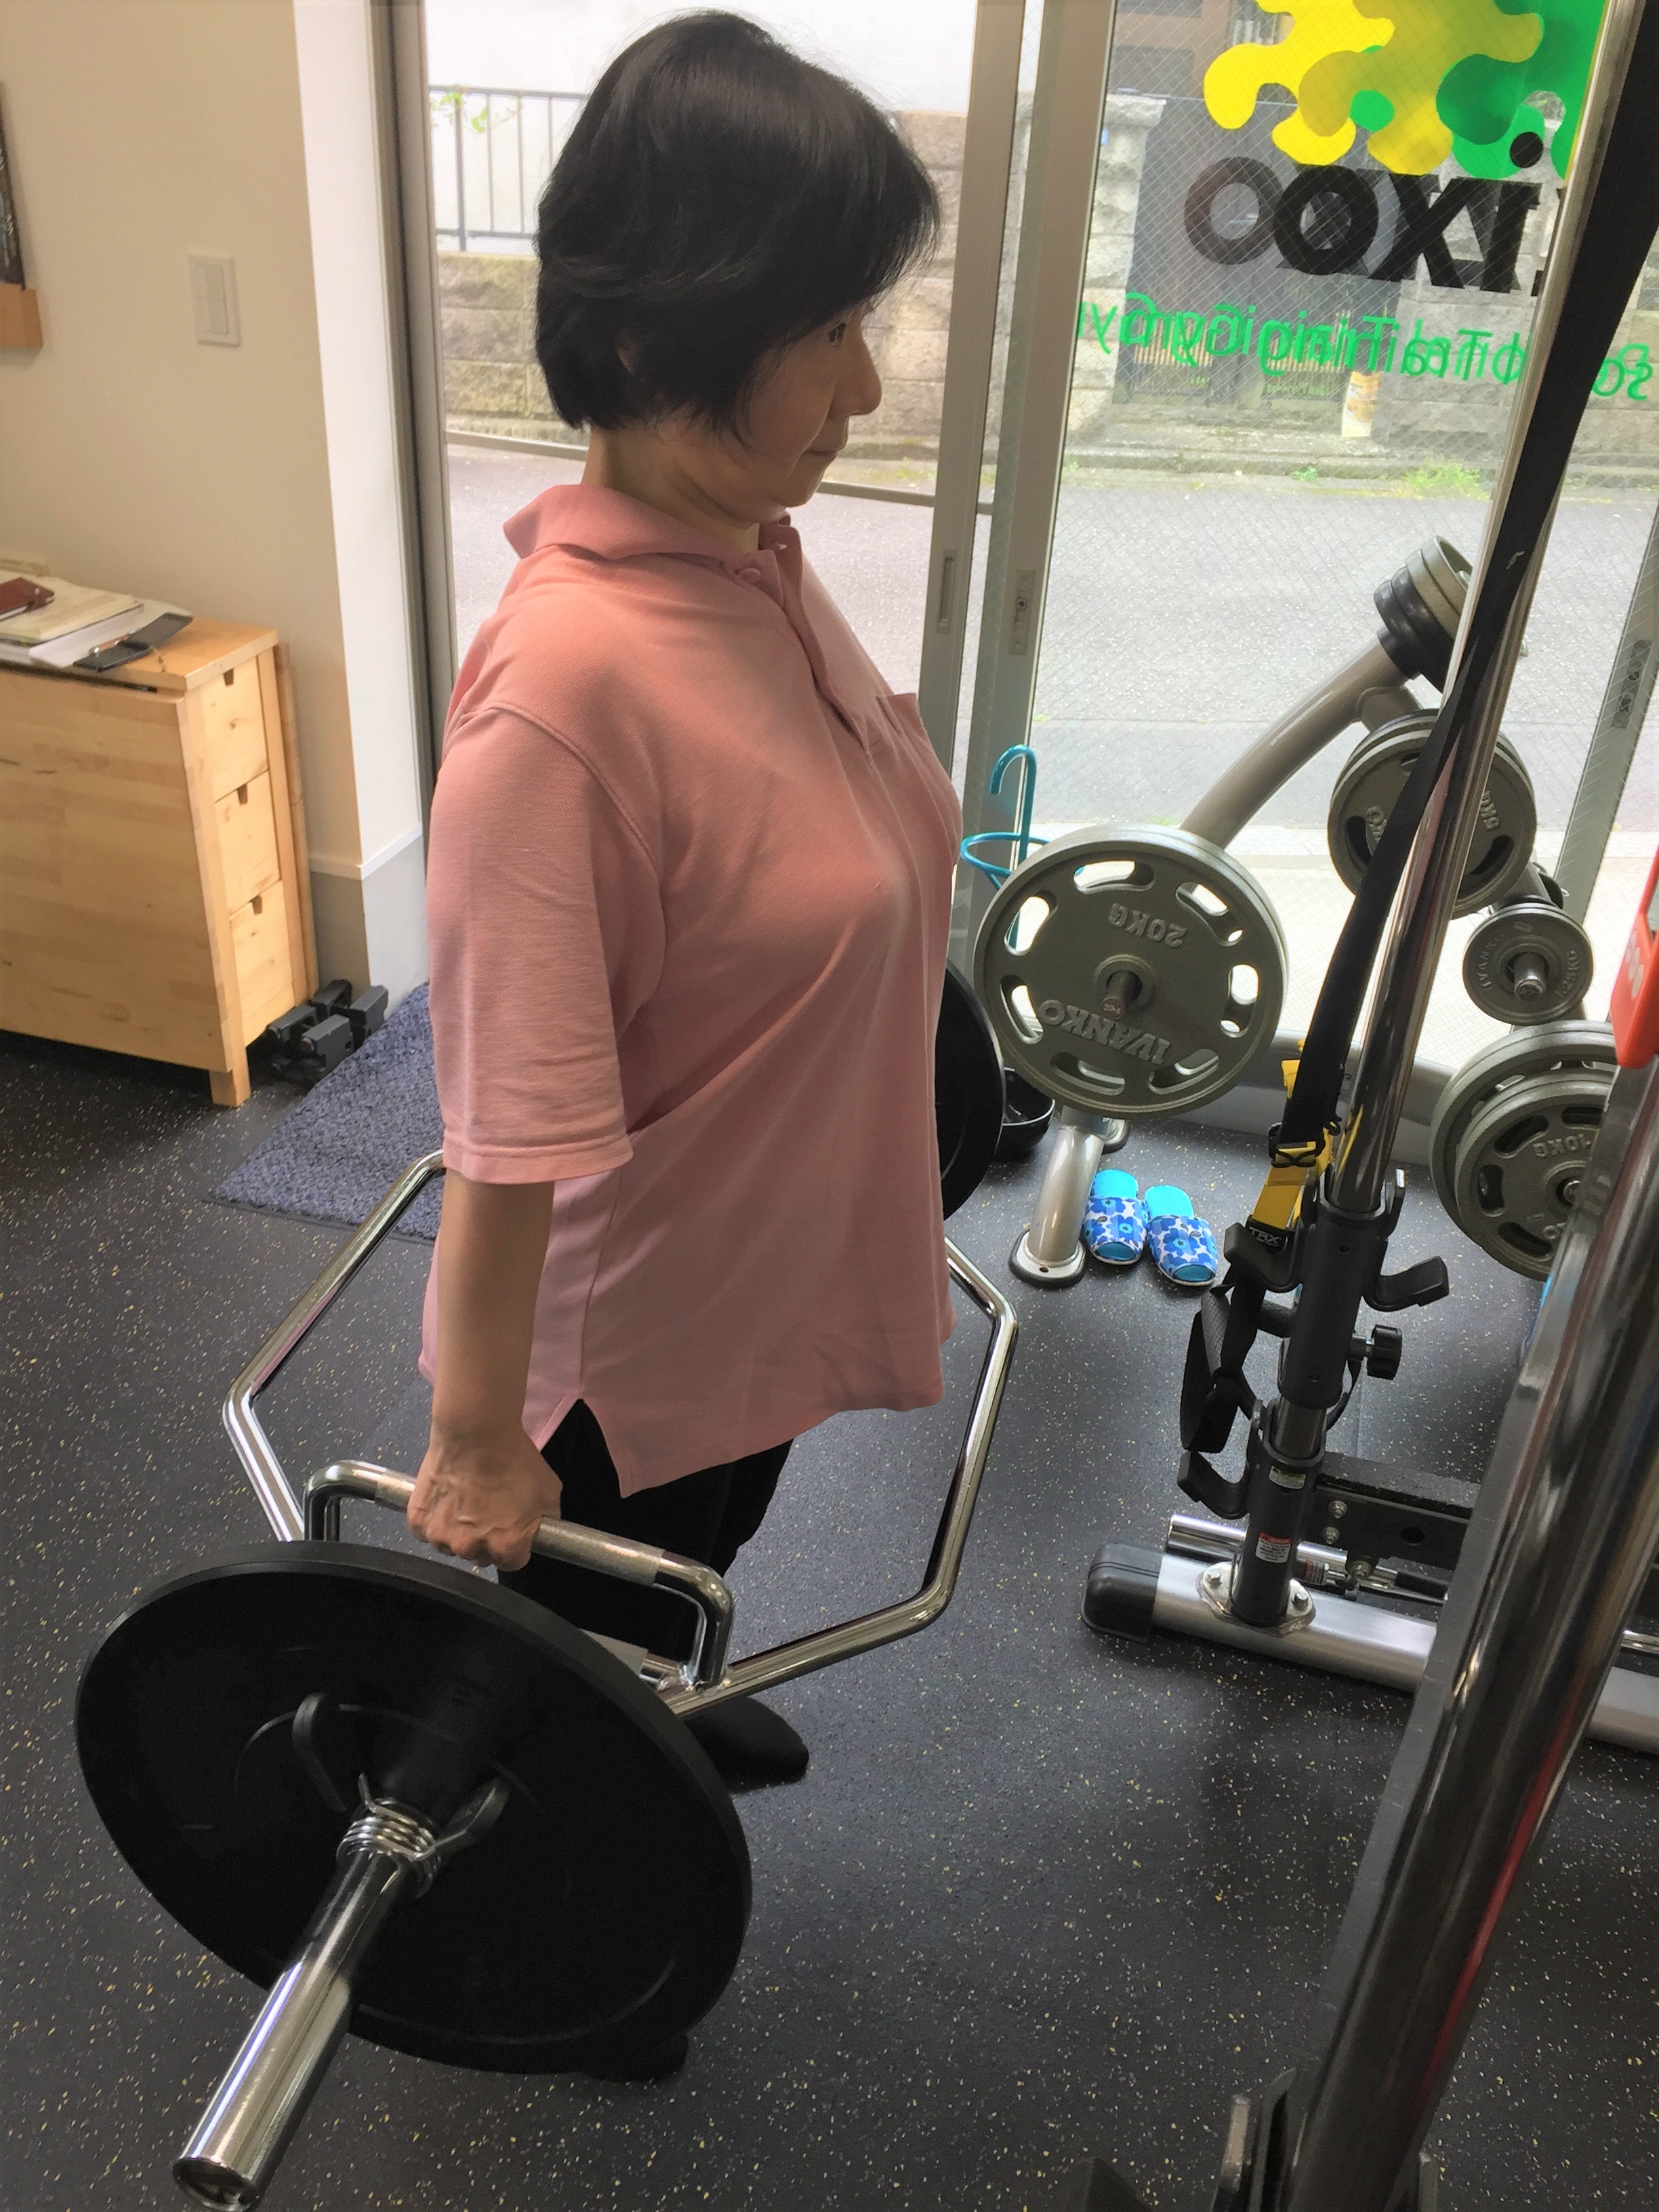 リハビリで健康な人と同じ筋肉量を取り戻した私が伝えたい「変形性股関節症のリハビリに関する話」